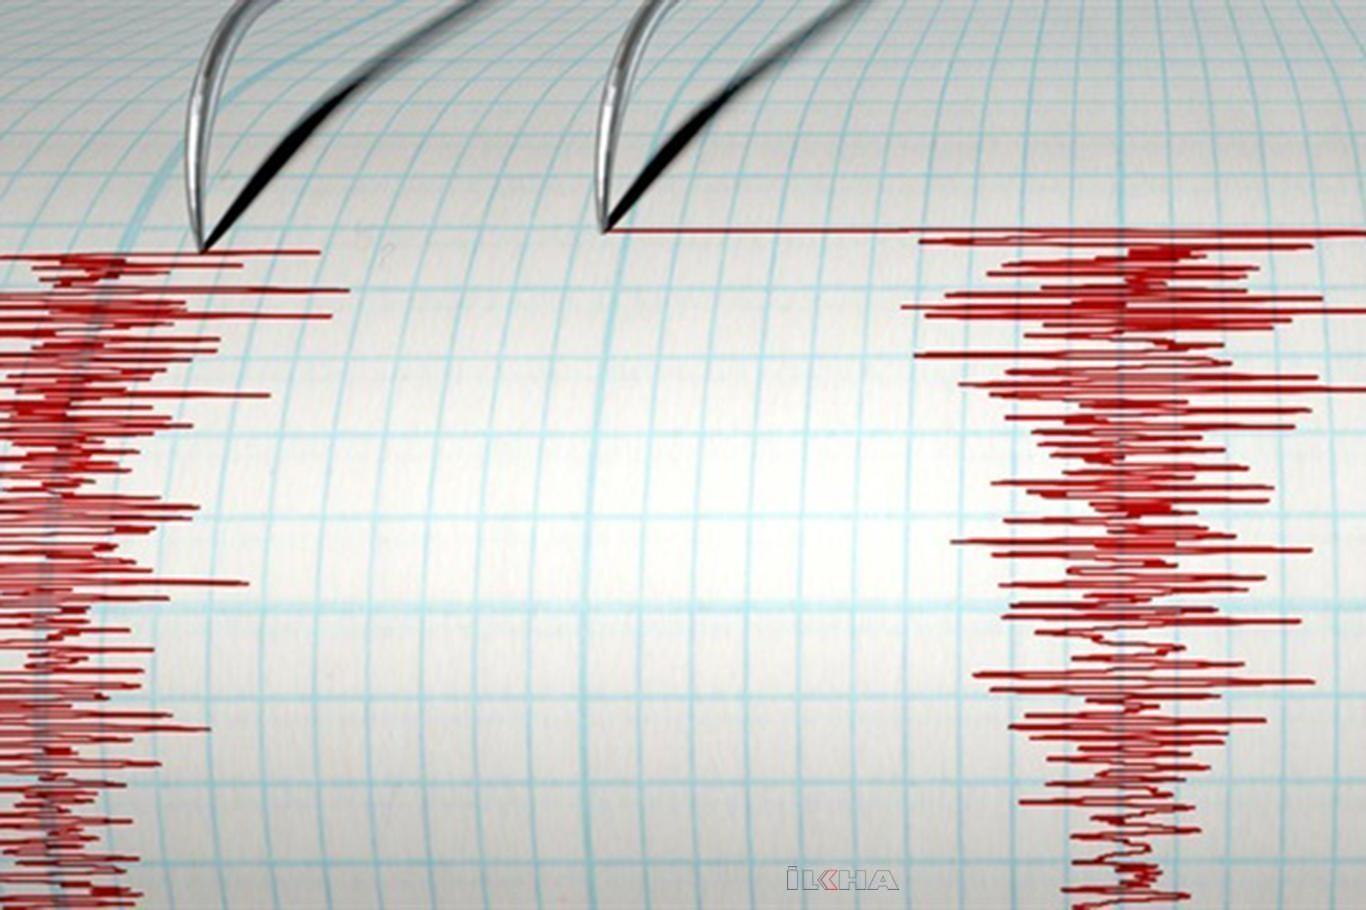  Antalya'da 4,3 büyüklüğünde deprem